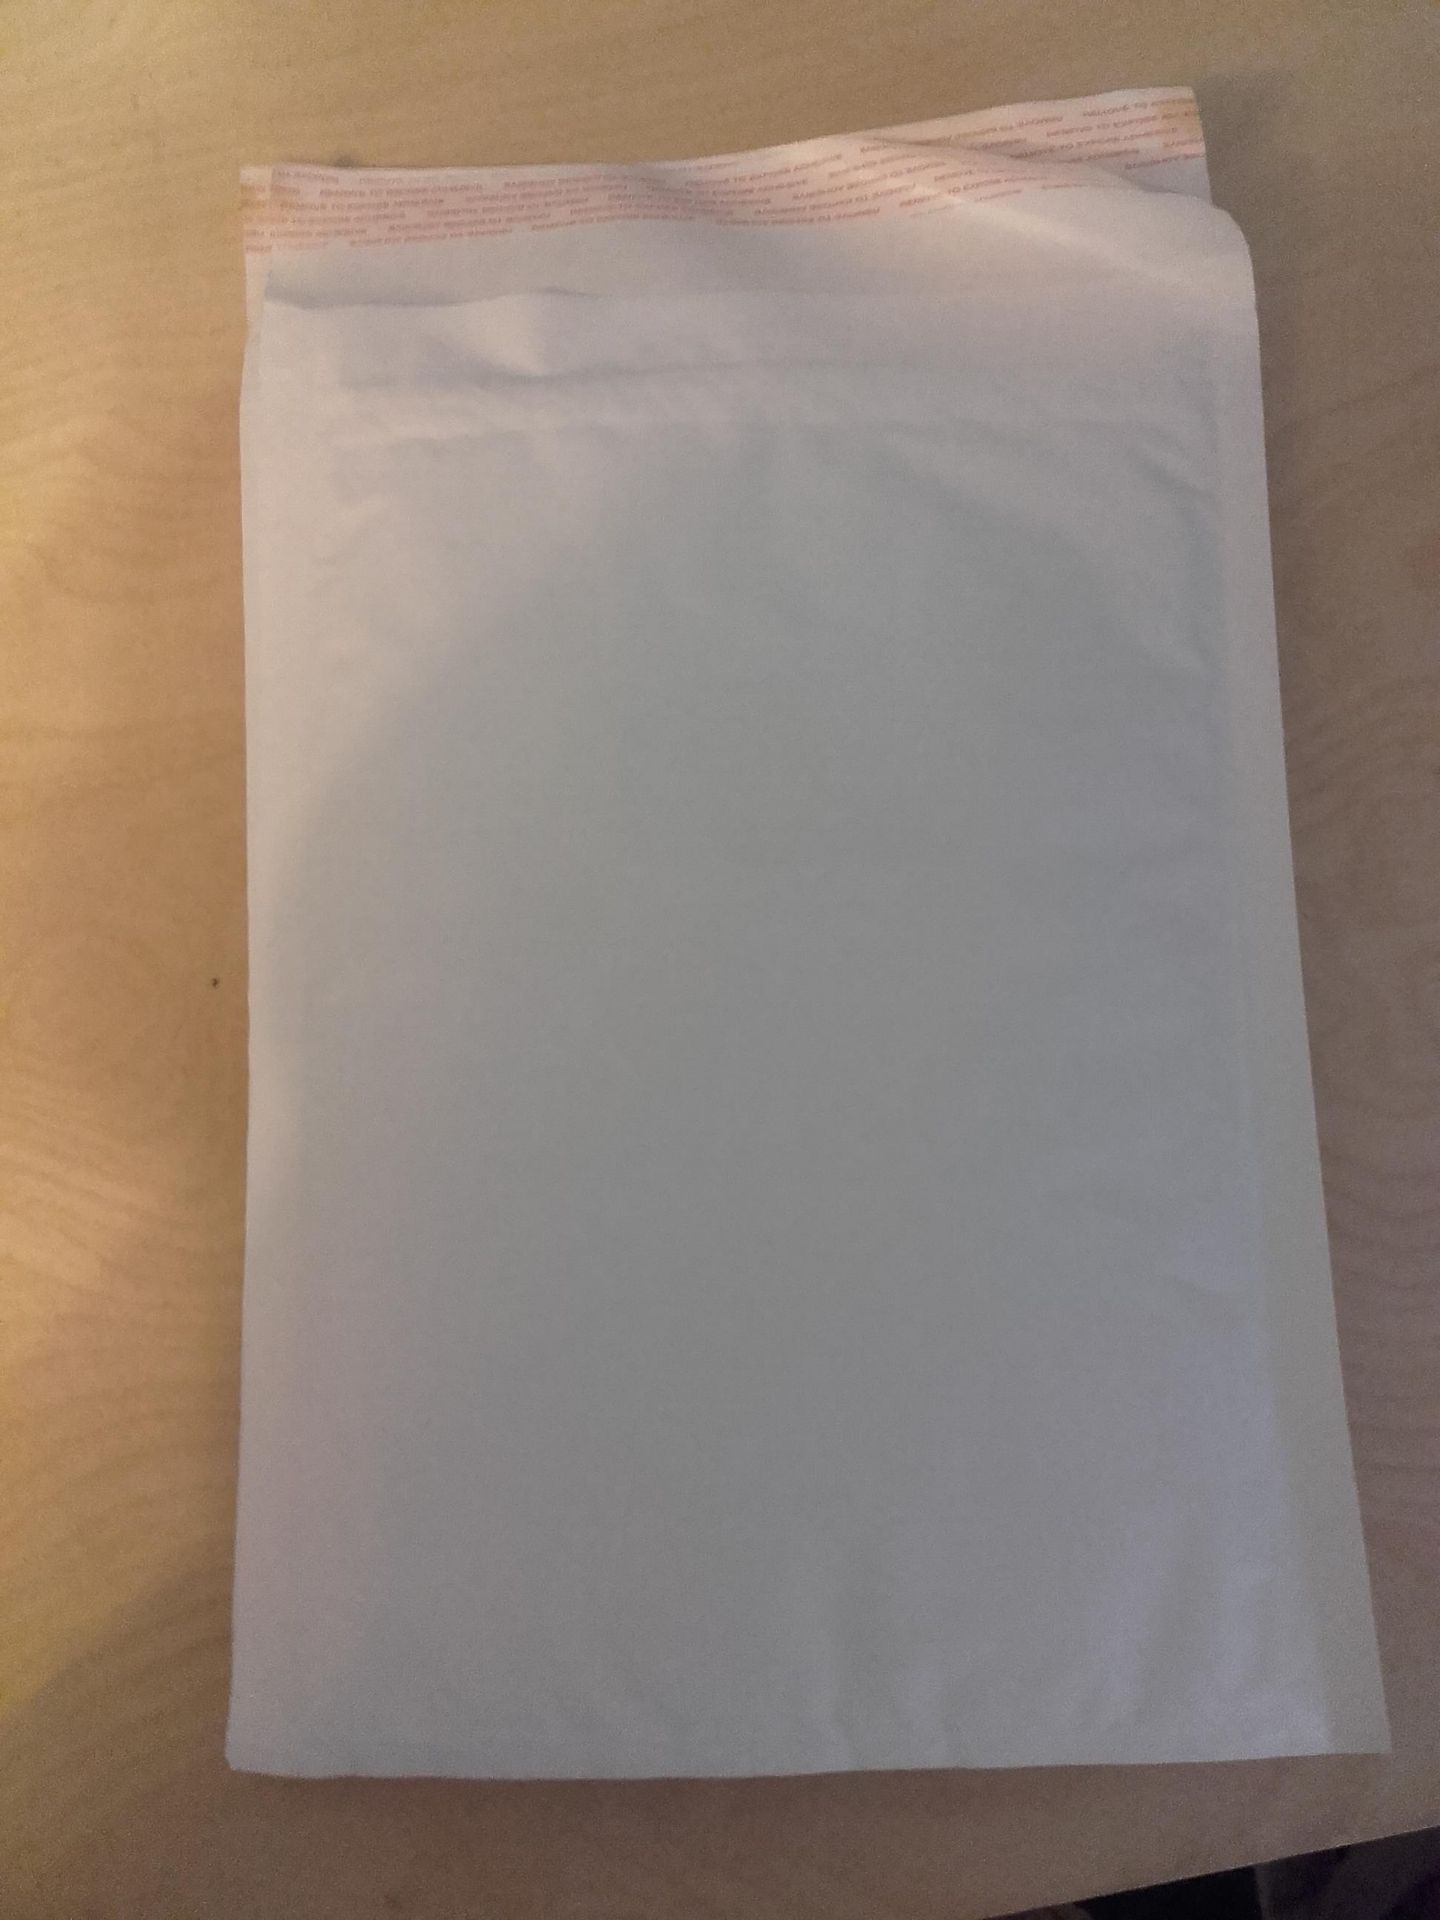 1 x bx of 100 215mm x 310mm white large letter  envelopes